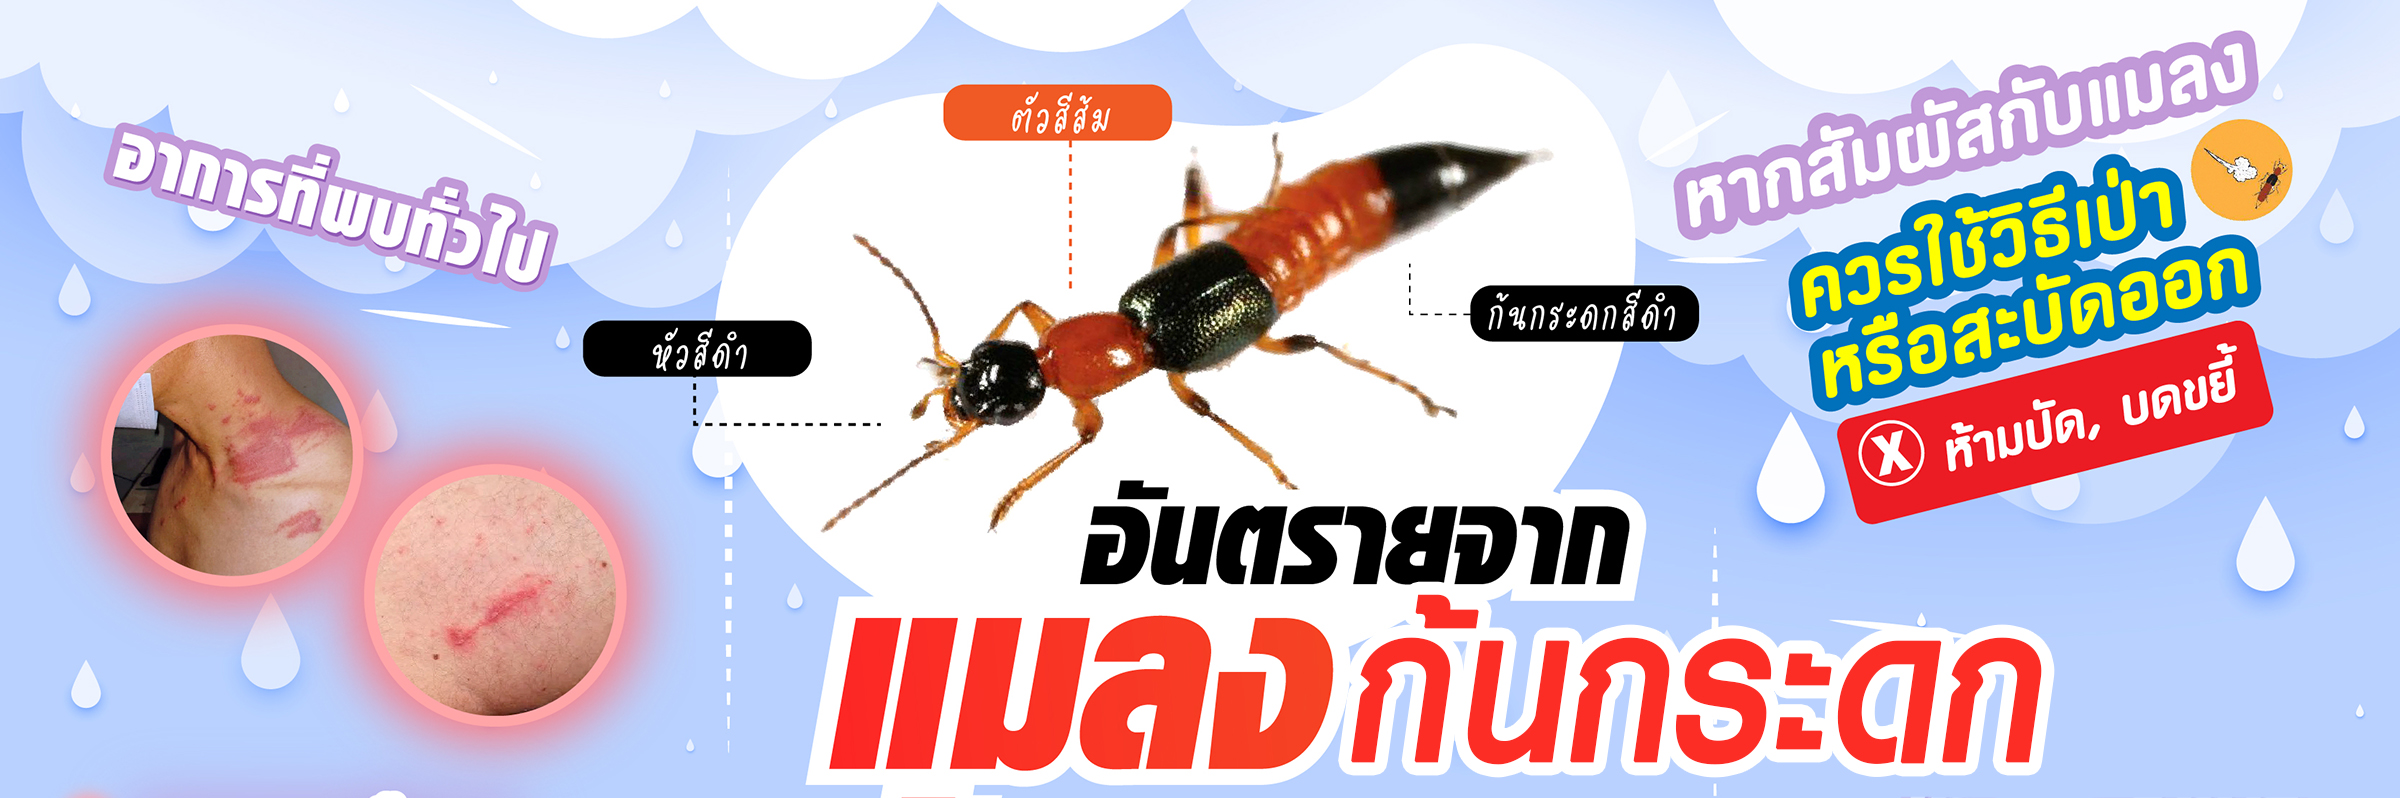 อันตรายจากแมลงก้นกระดก พิษร้ายในฤดูฝน